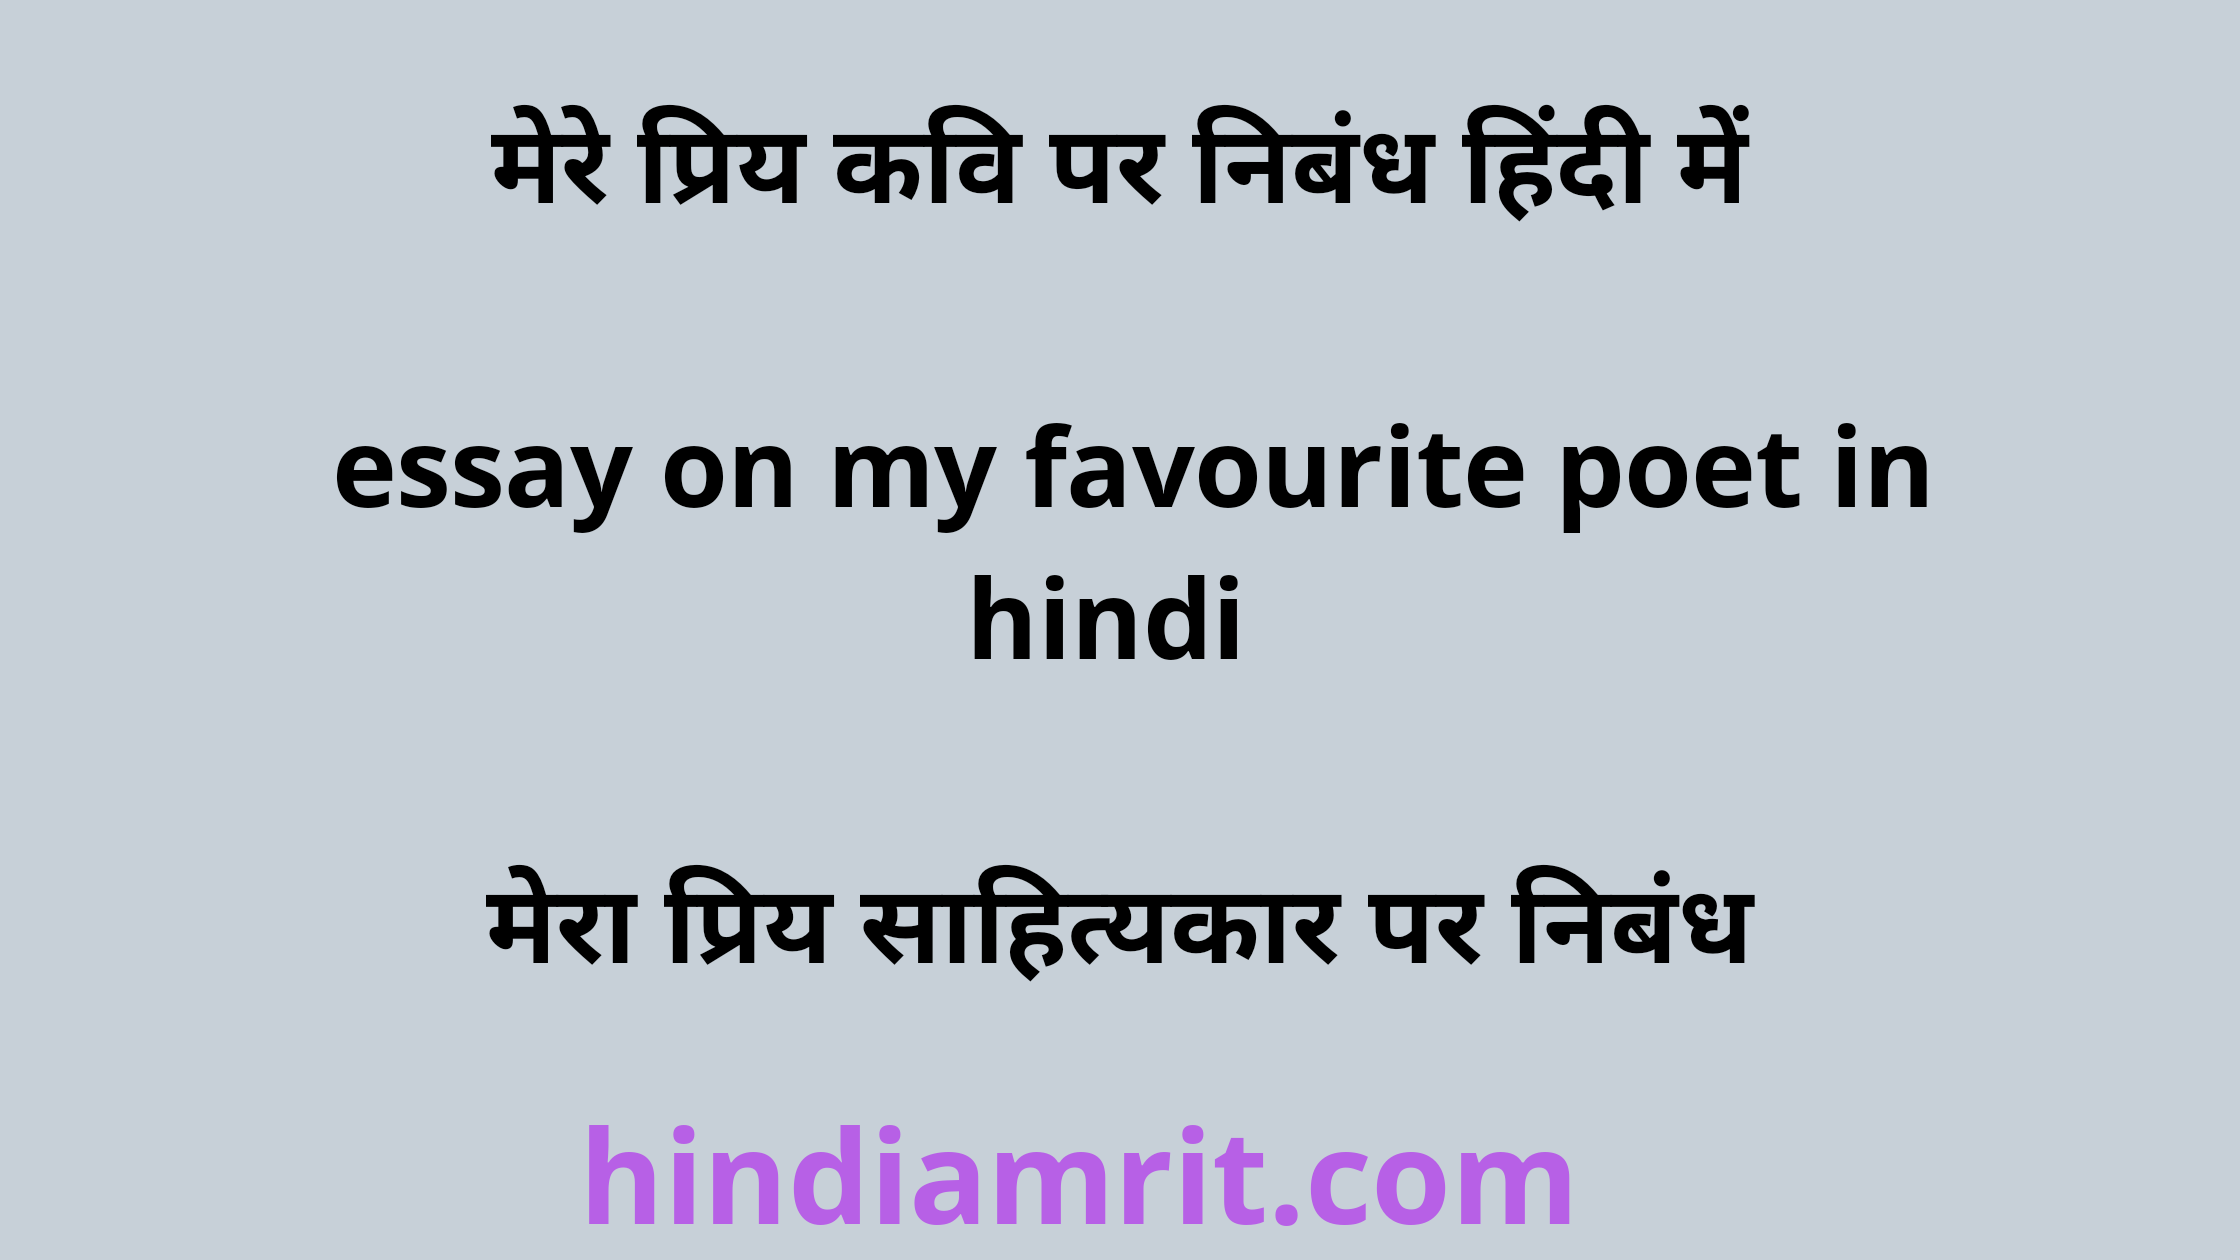 hindi essay on poet